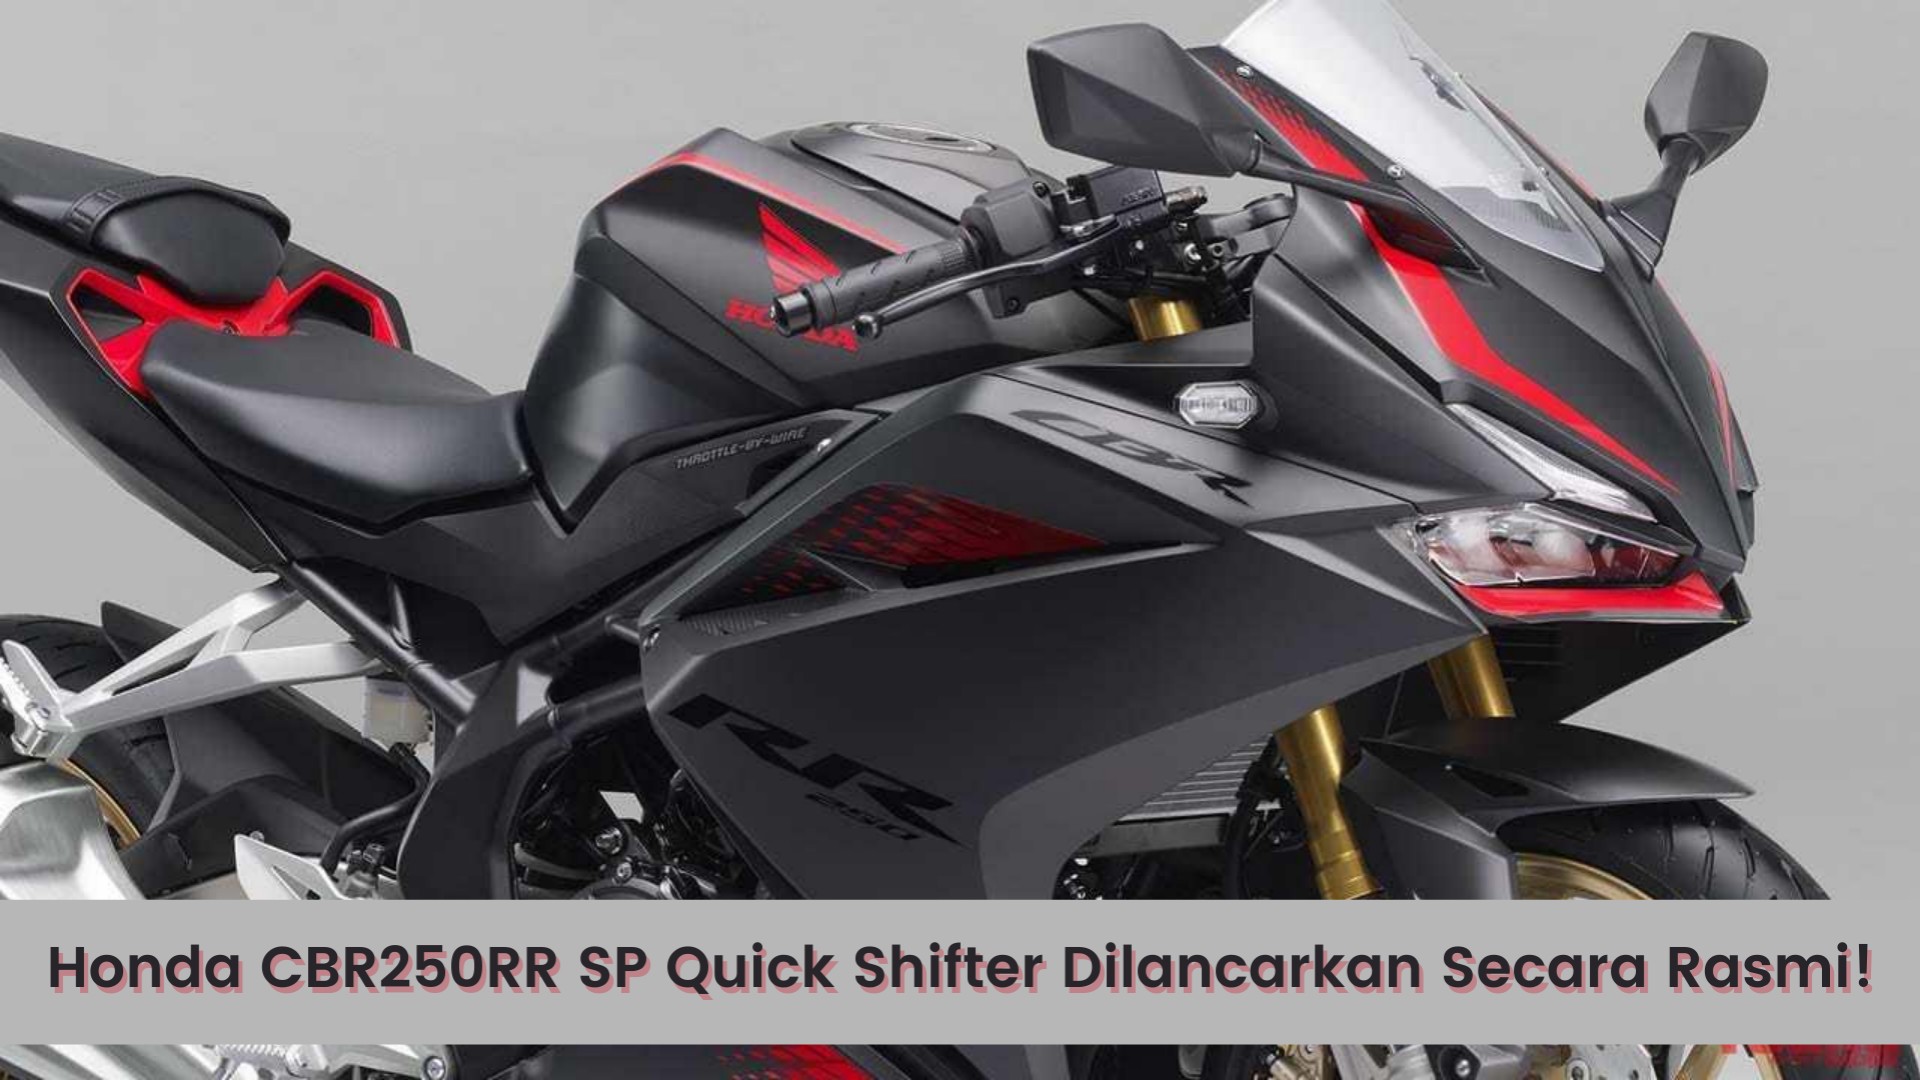 Honda CBR250RR SP Quick Shifter Dilancarkan Secara Rasmi di Indonesia, Lihat Spesifikasi Lengkap